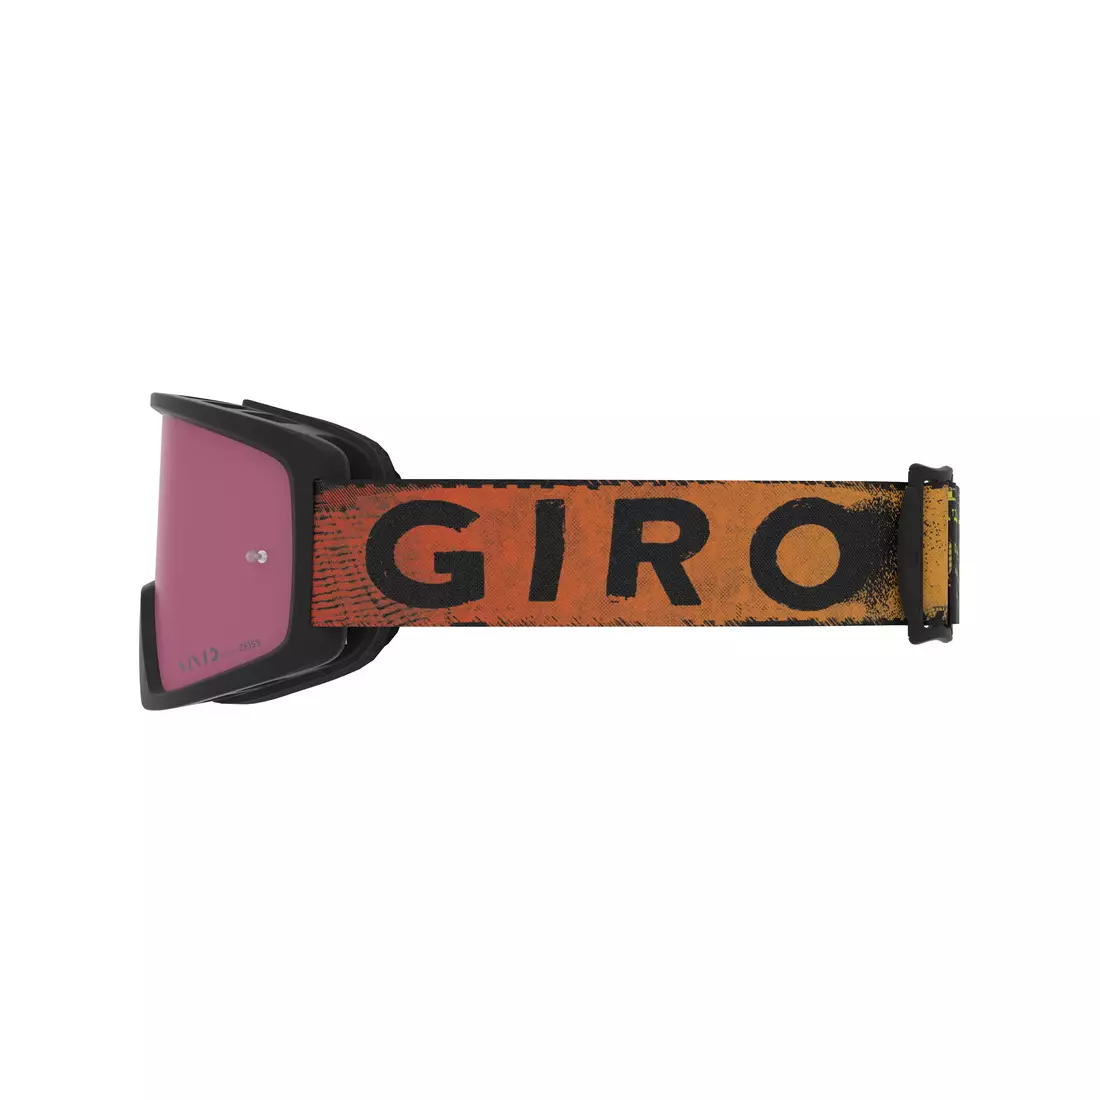 GIRO kerékpár szemüveg tazz mtb black red hypnotic (Színes üveg VIVID-Carl Zeiss TRAIL + átlátszó üveg 99% S0) GR-7114191